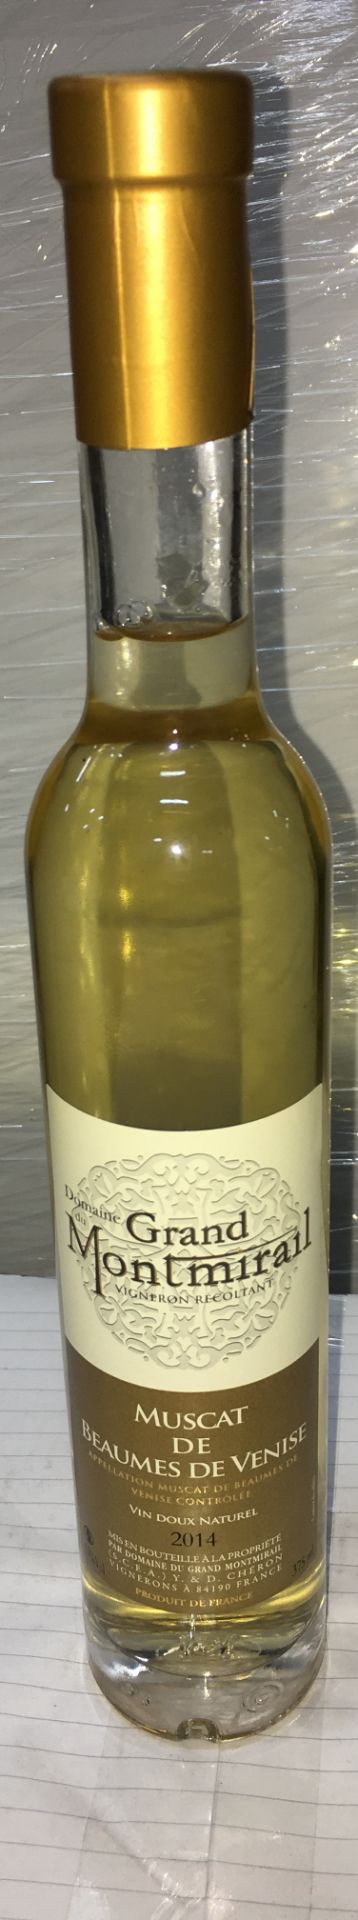 16 x 375ml Bottles Of Domaine grand du montmiral 2014 white Wine | RRP £22.50 per bottle